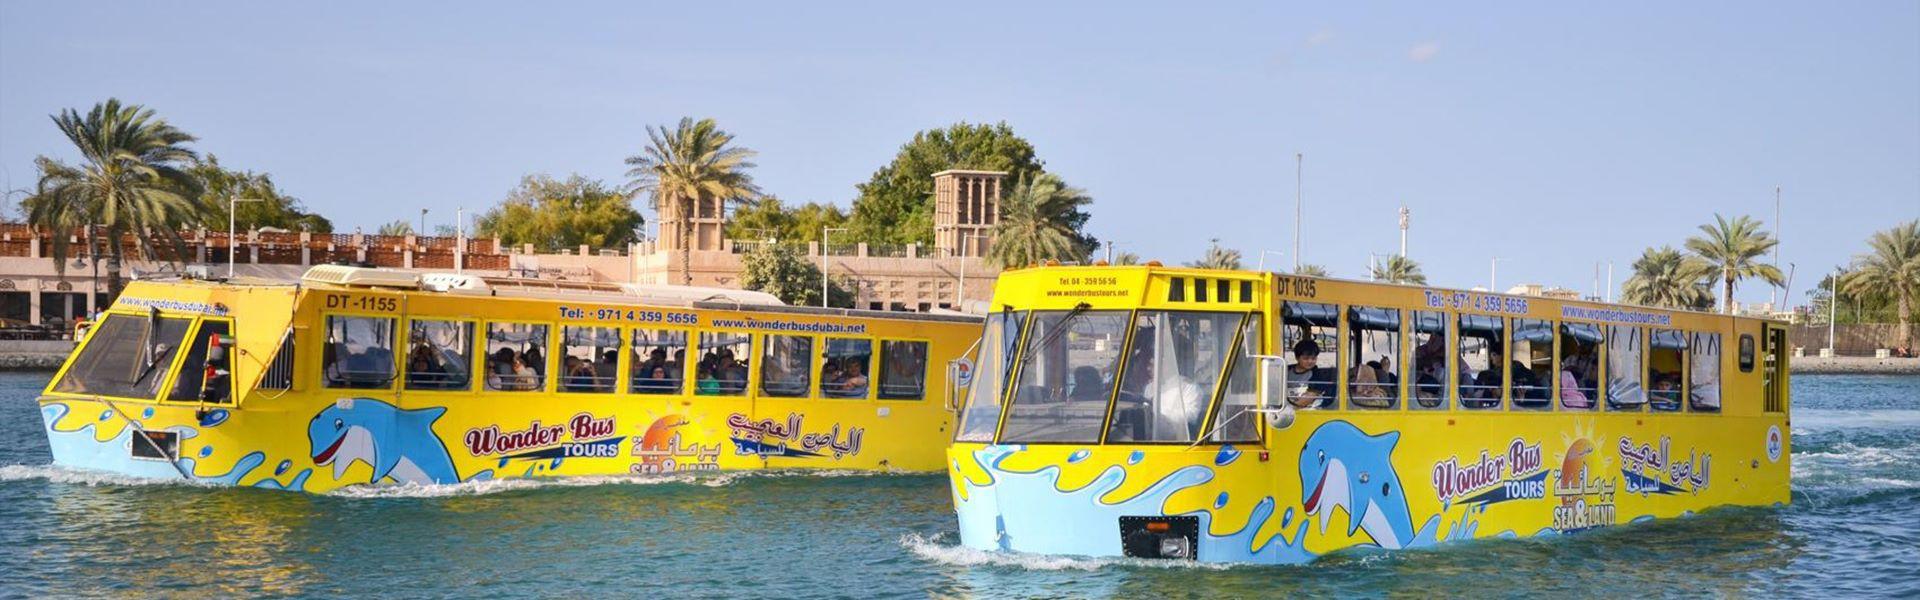 اتوبوس شگفت انگیز دبی  Wonder Bus Dubai